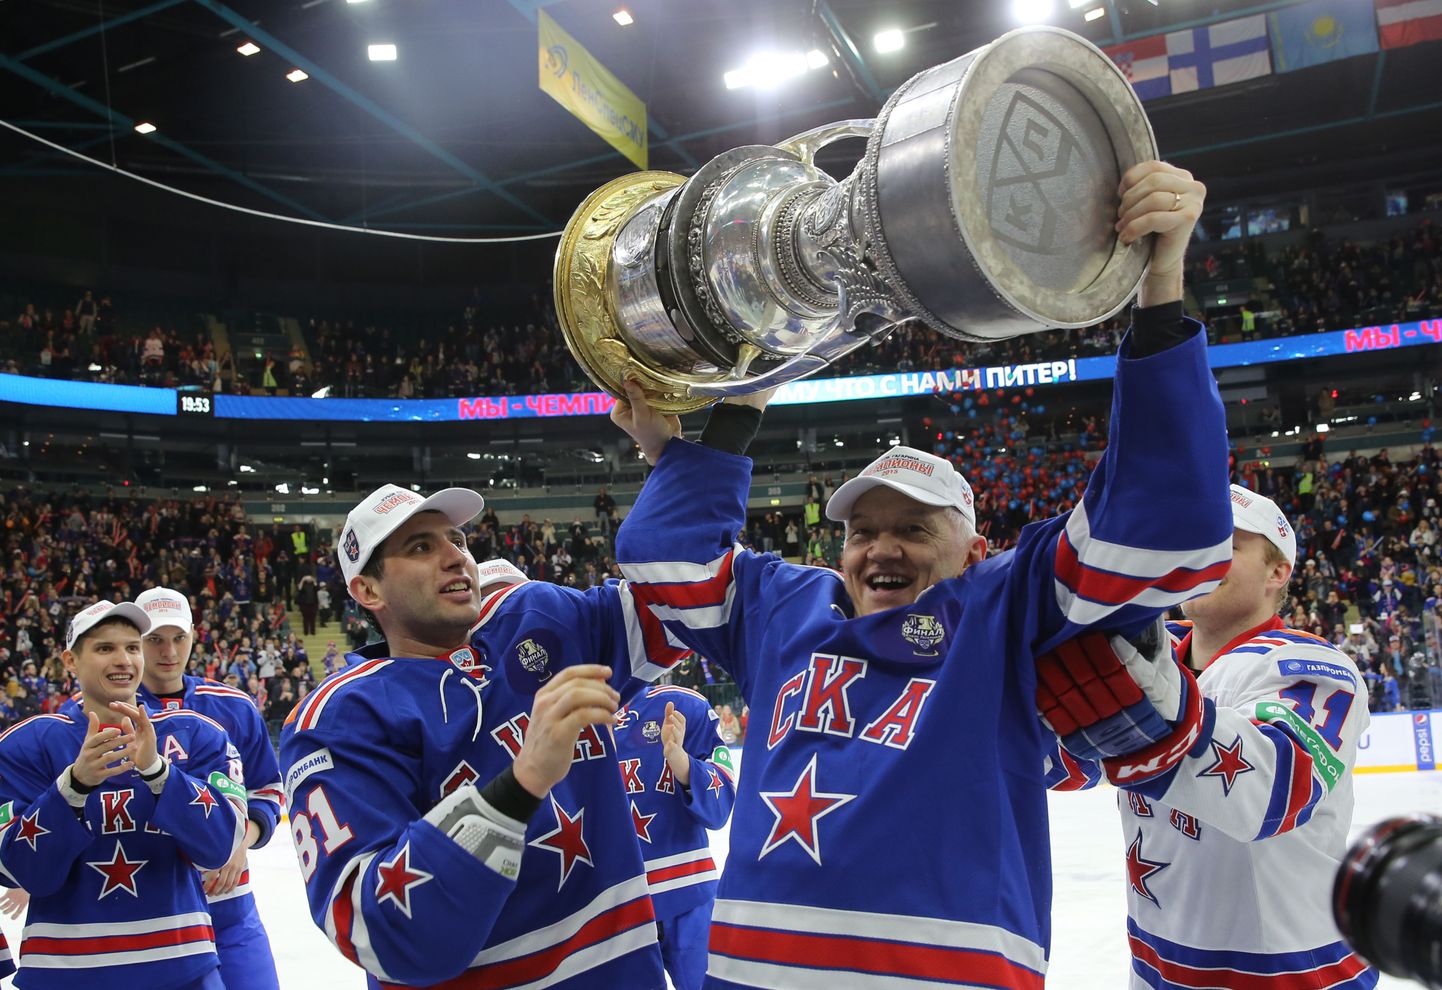 Петербужский СКА является действующим чемпионом КХЛ (обладатель Кубка Гагарина).